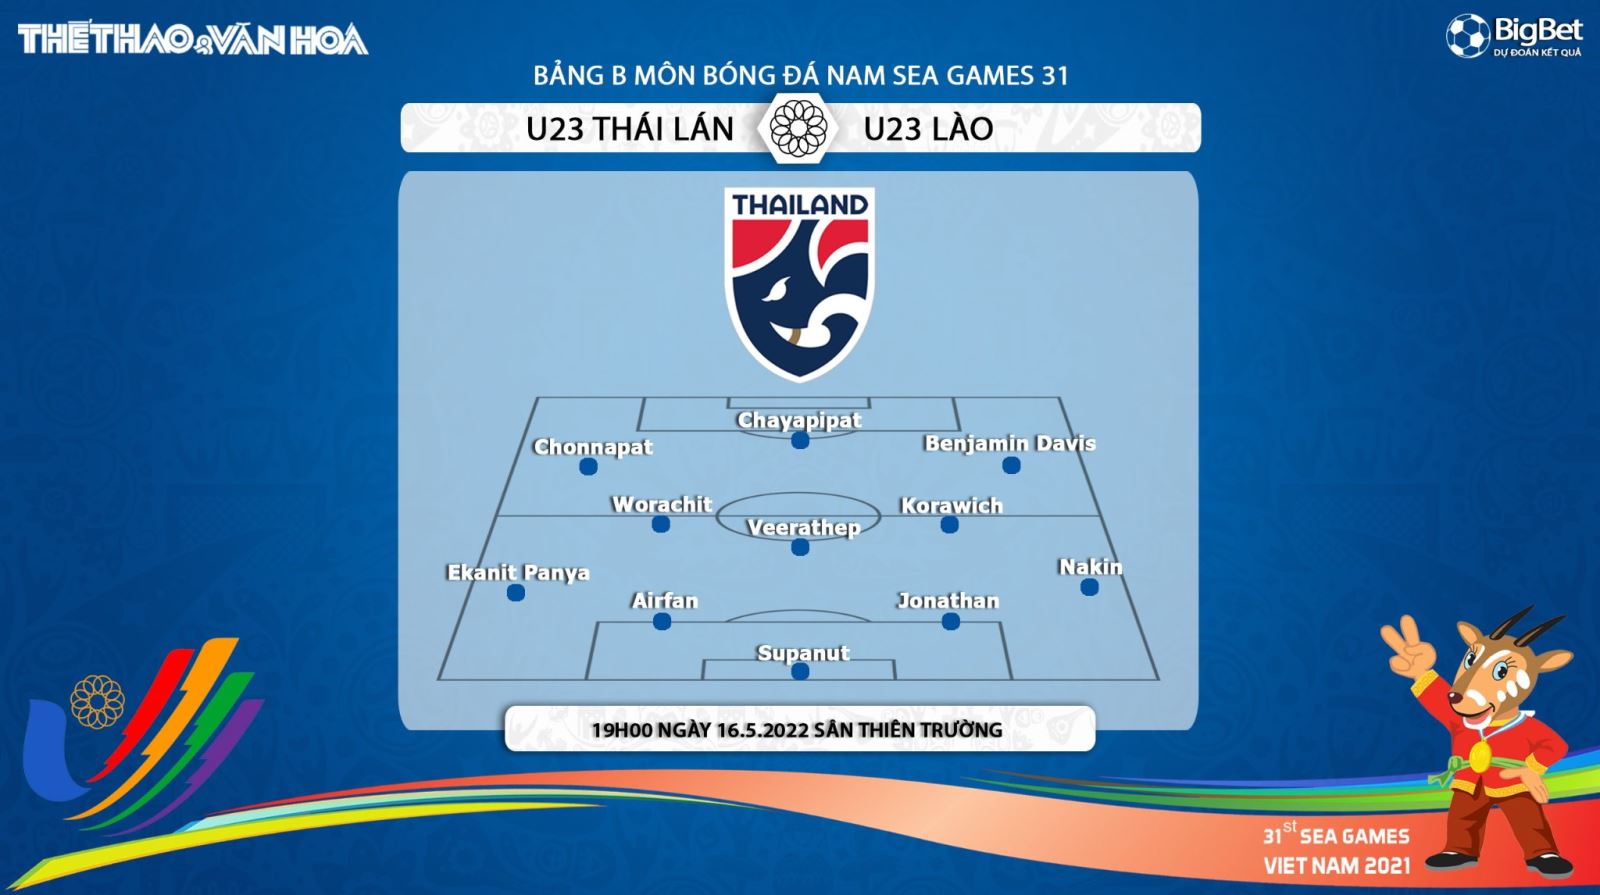 nhận định bóng đá U23 Thái Lan vs U23 Lào, nhận định bóng đá, U23 Thái Lan vs U23 Lào, nhận định kết quả, U23 Thái Lan, U23 Lào, keo nha cai, dự đoán bóng đá, bóng đá nam SEA Games 31